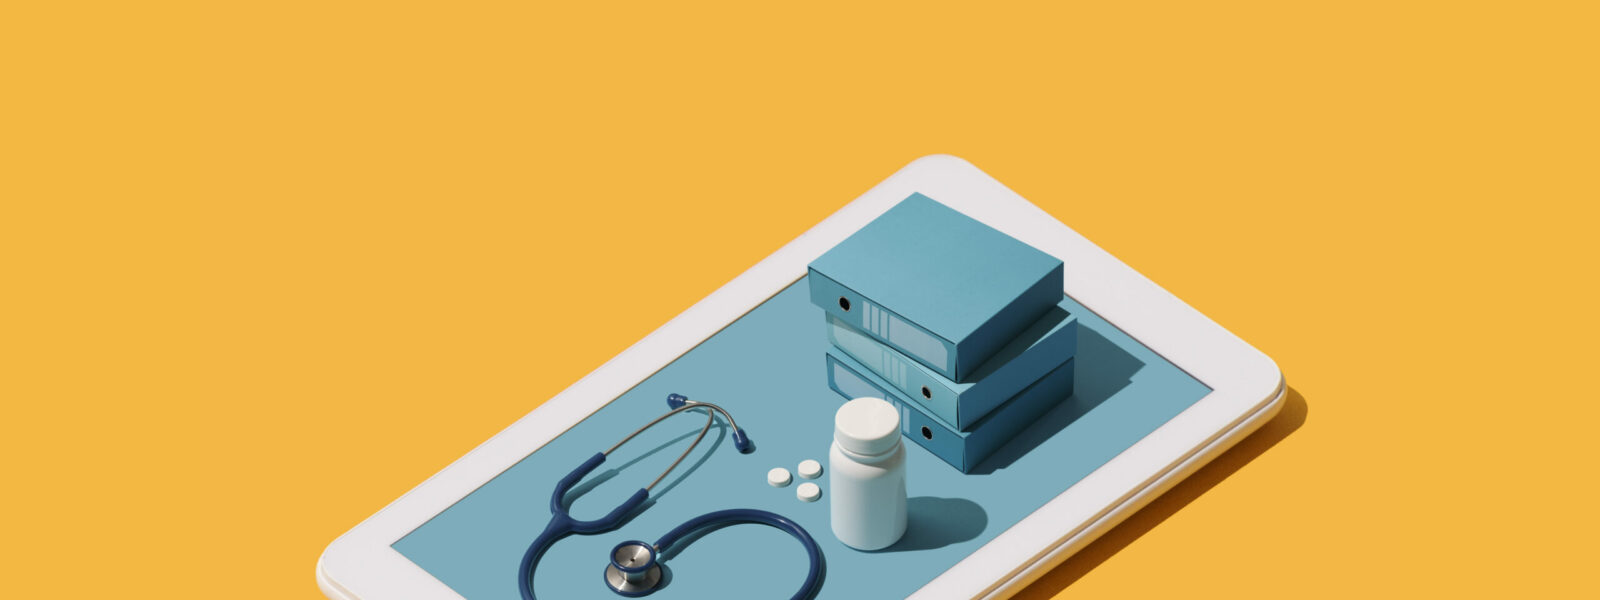 Online medical app on a smartphone